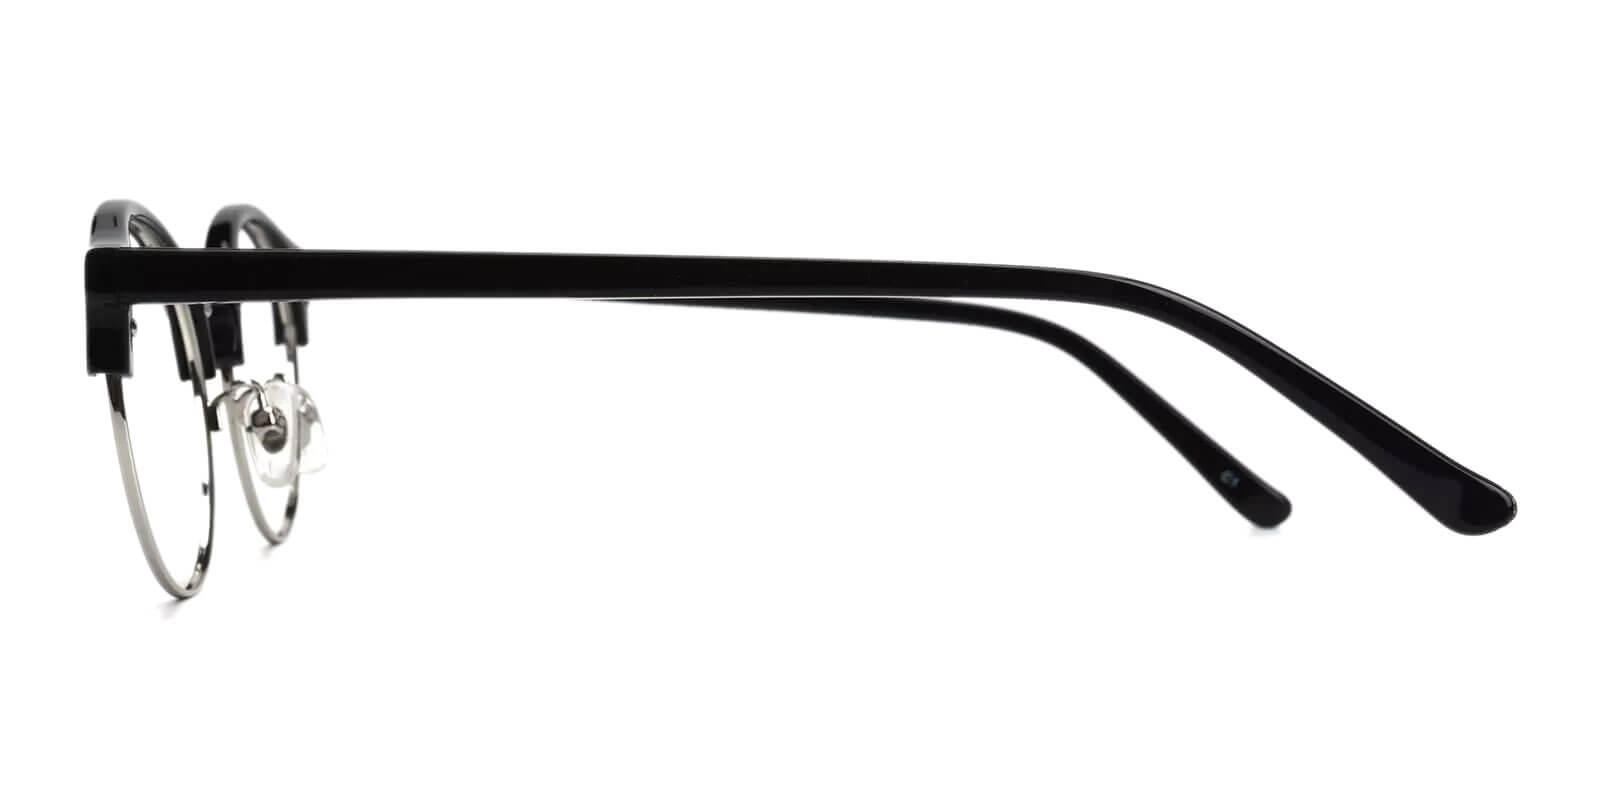 Zenoria Black Combination Eyeglasses , NosePads Frames from ABBE Glasses